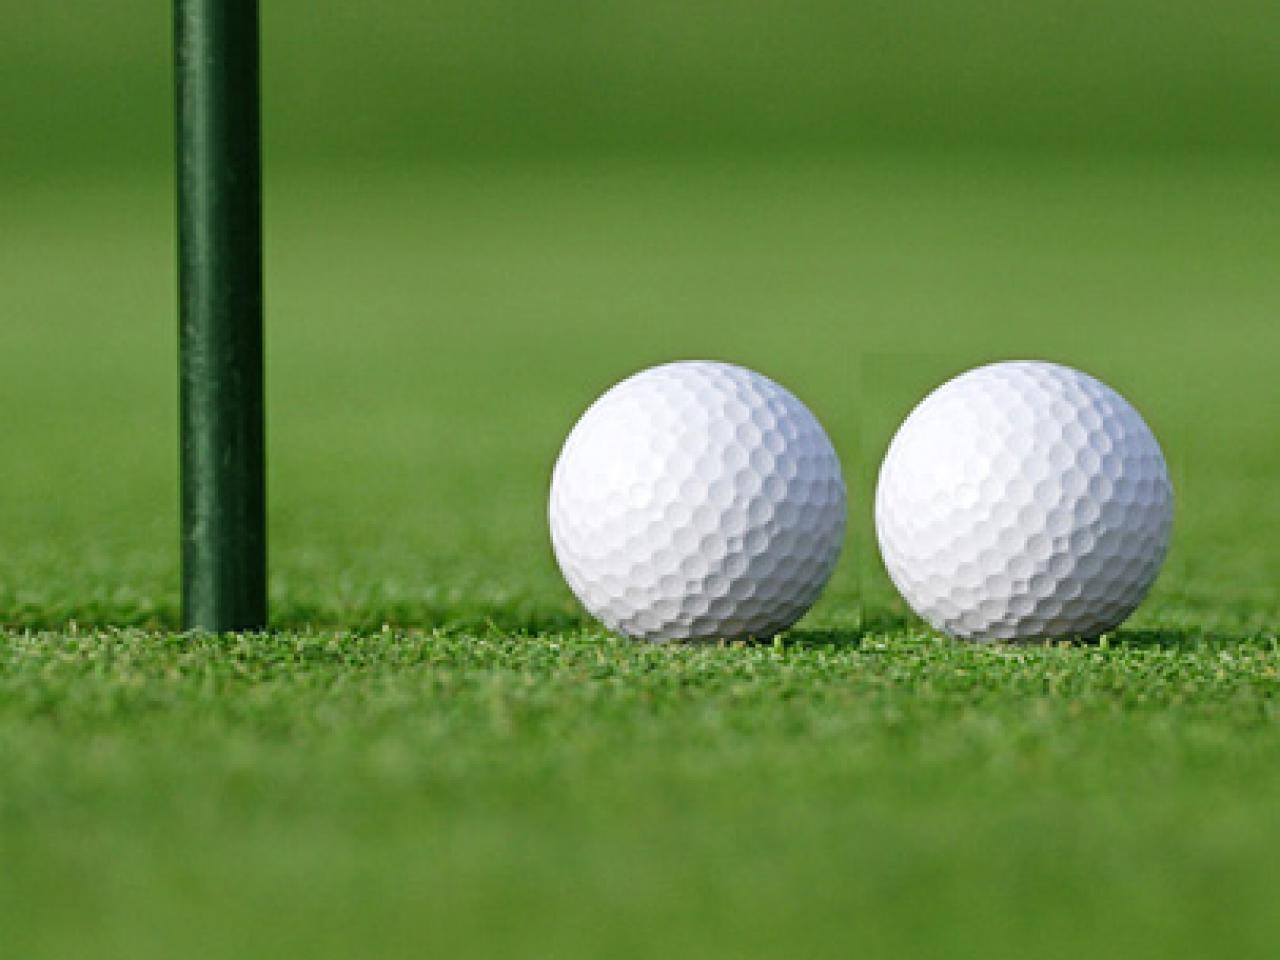 Single match. Гольф 9. Golf 9. Гольф информация на английском.